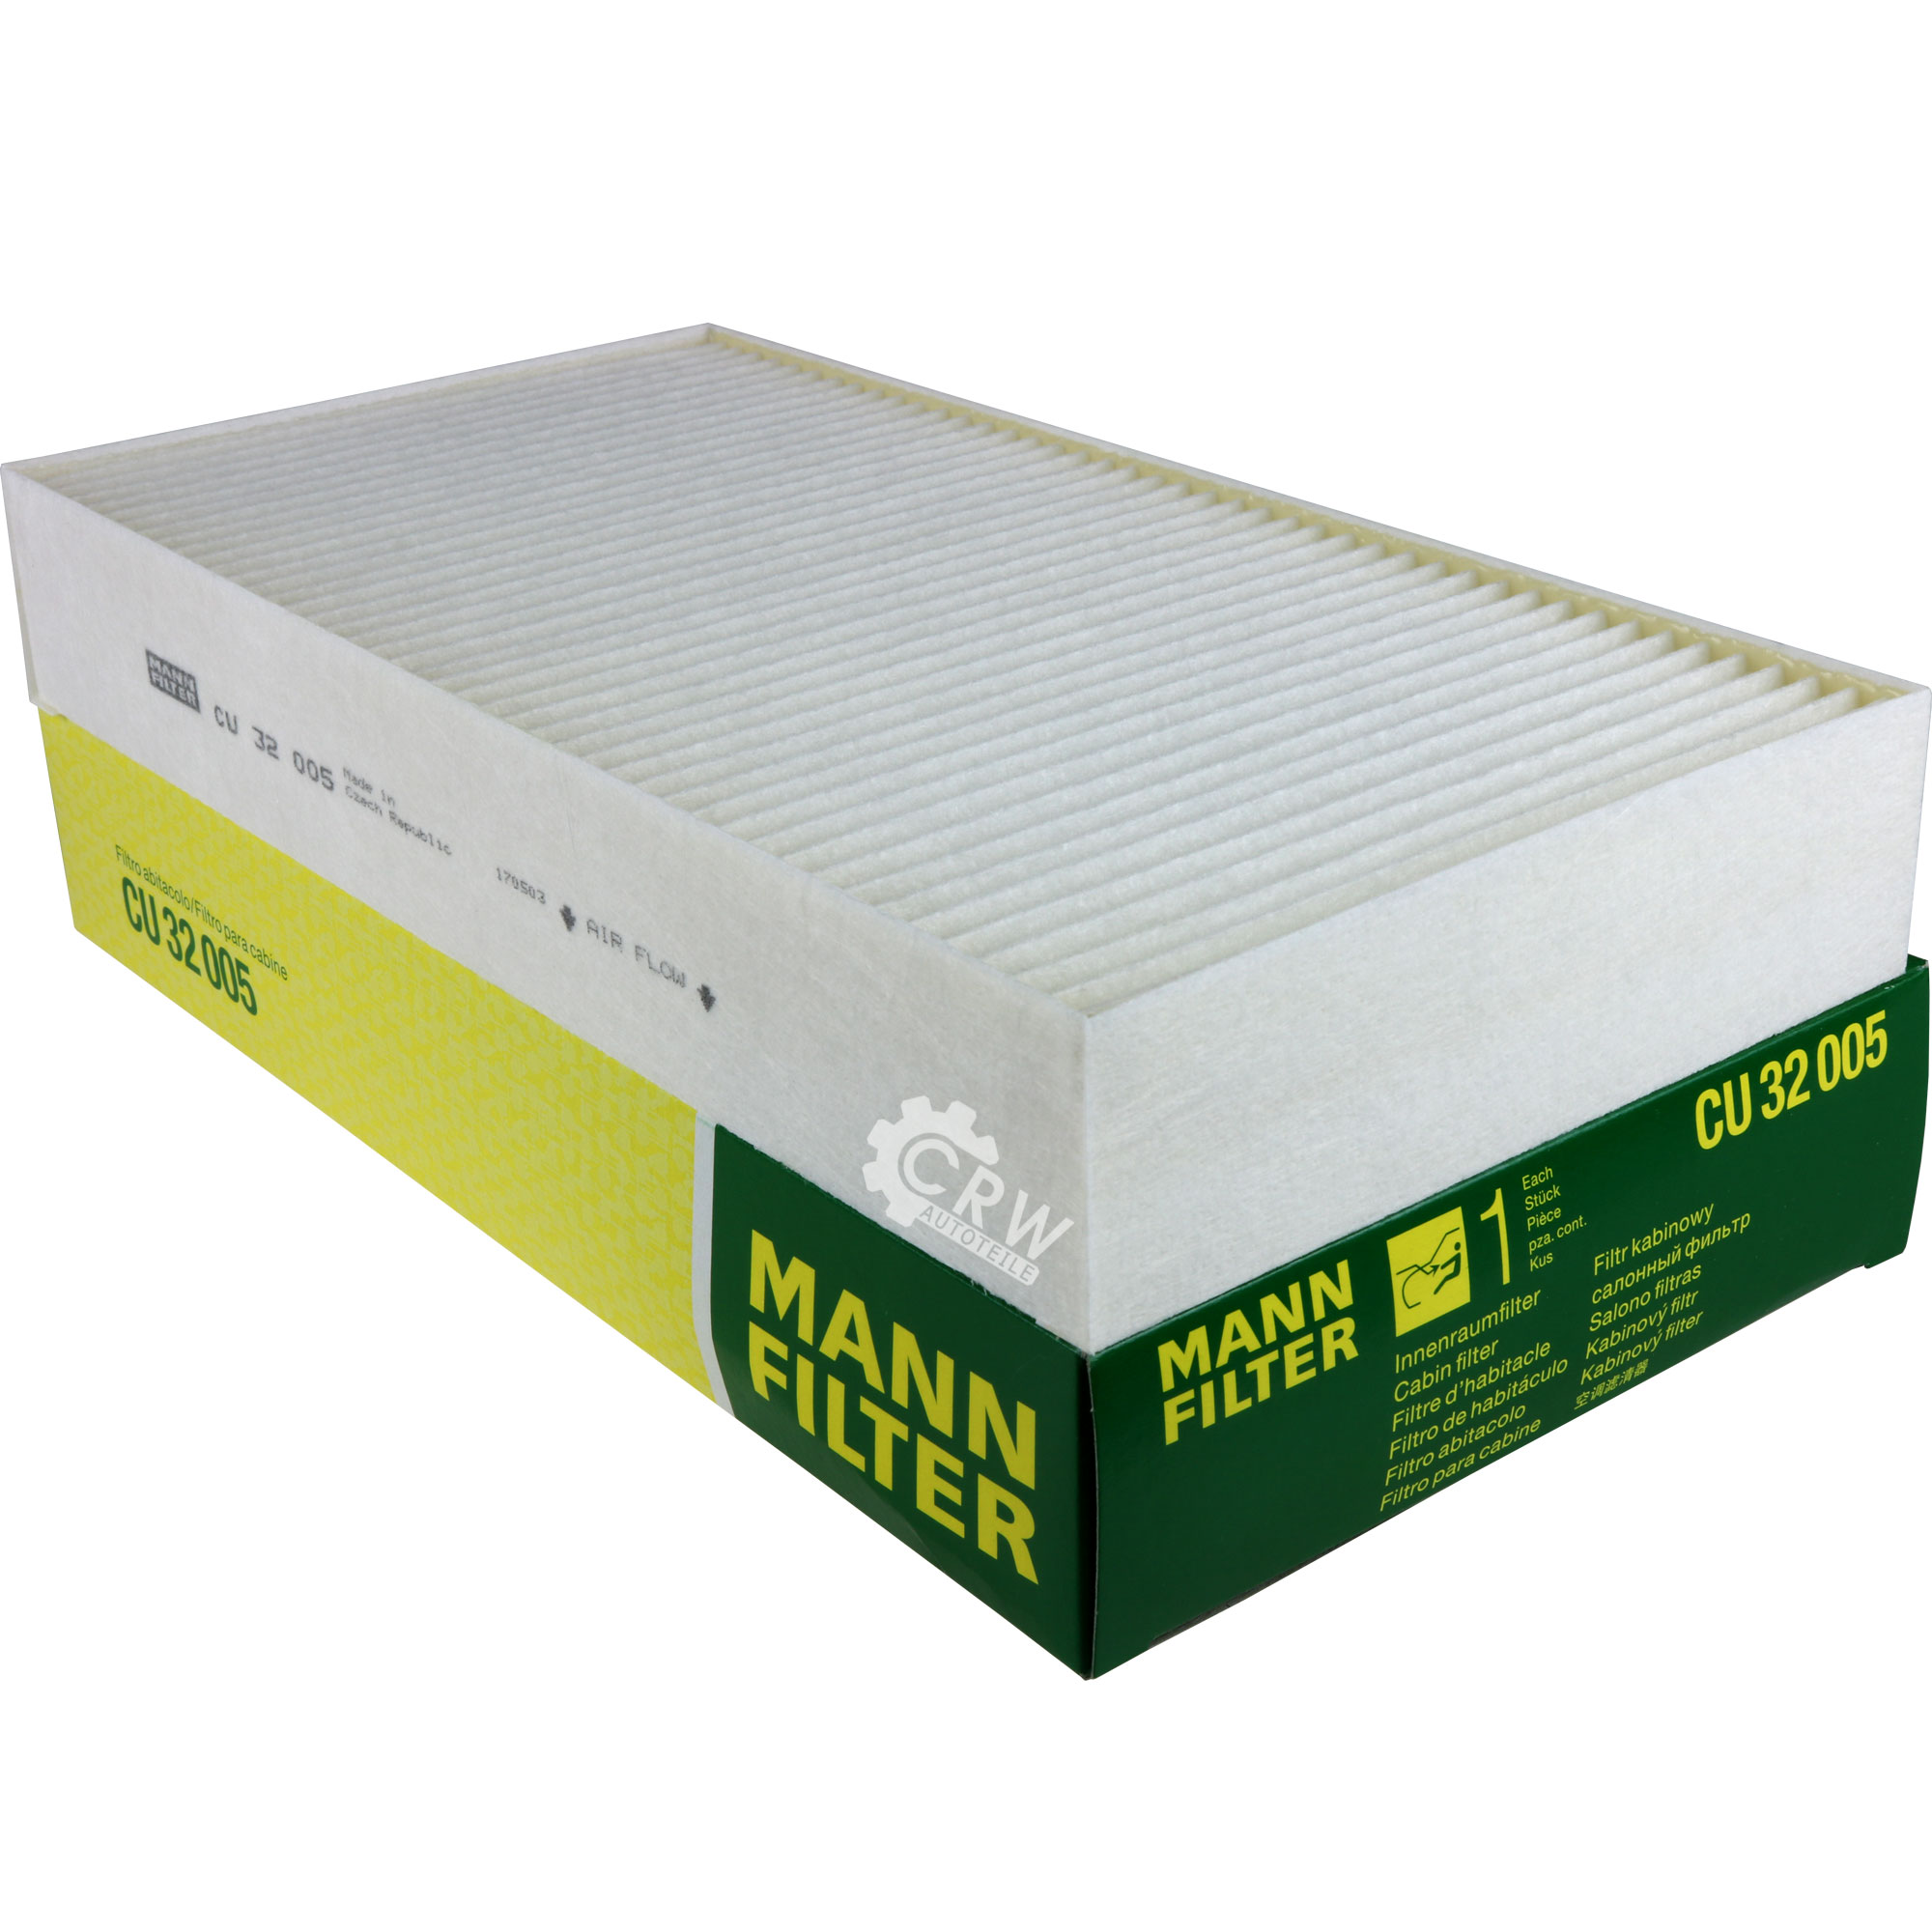 MANN-FILTER Filter Innenraumluft Pollenfilter Innenraumfilter CU 32 005